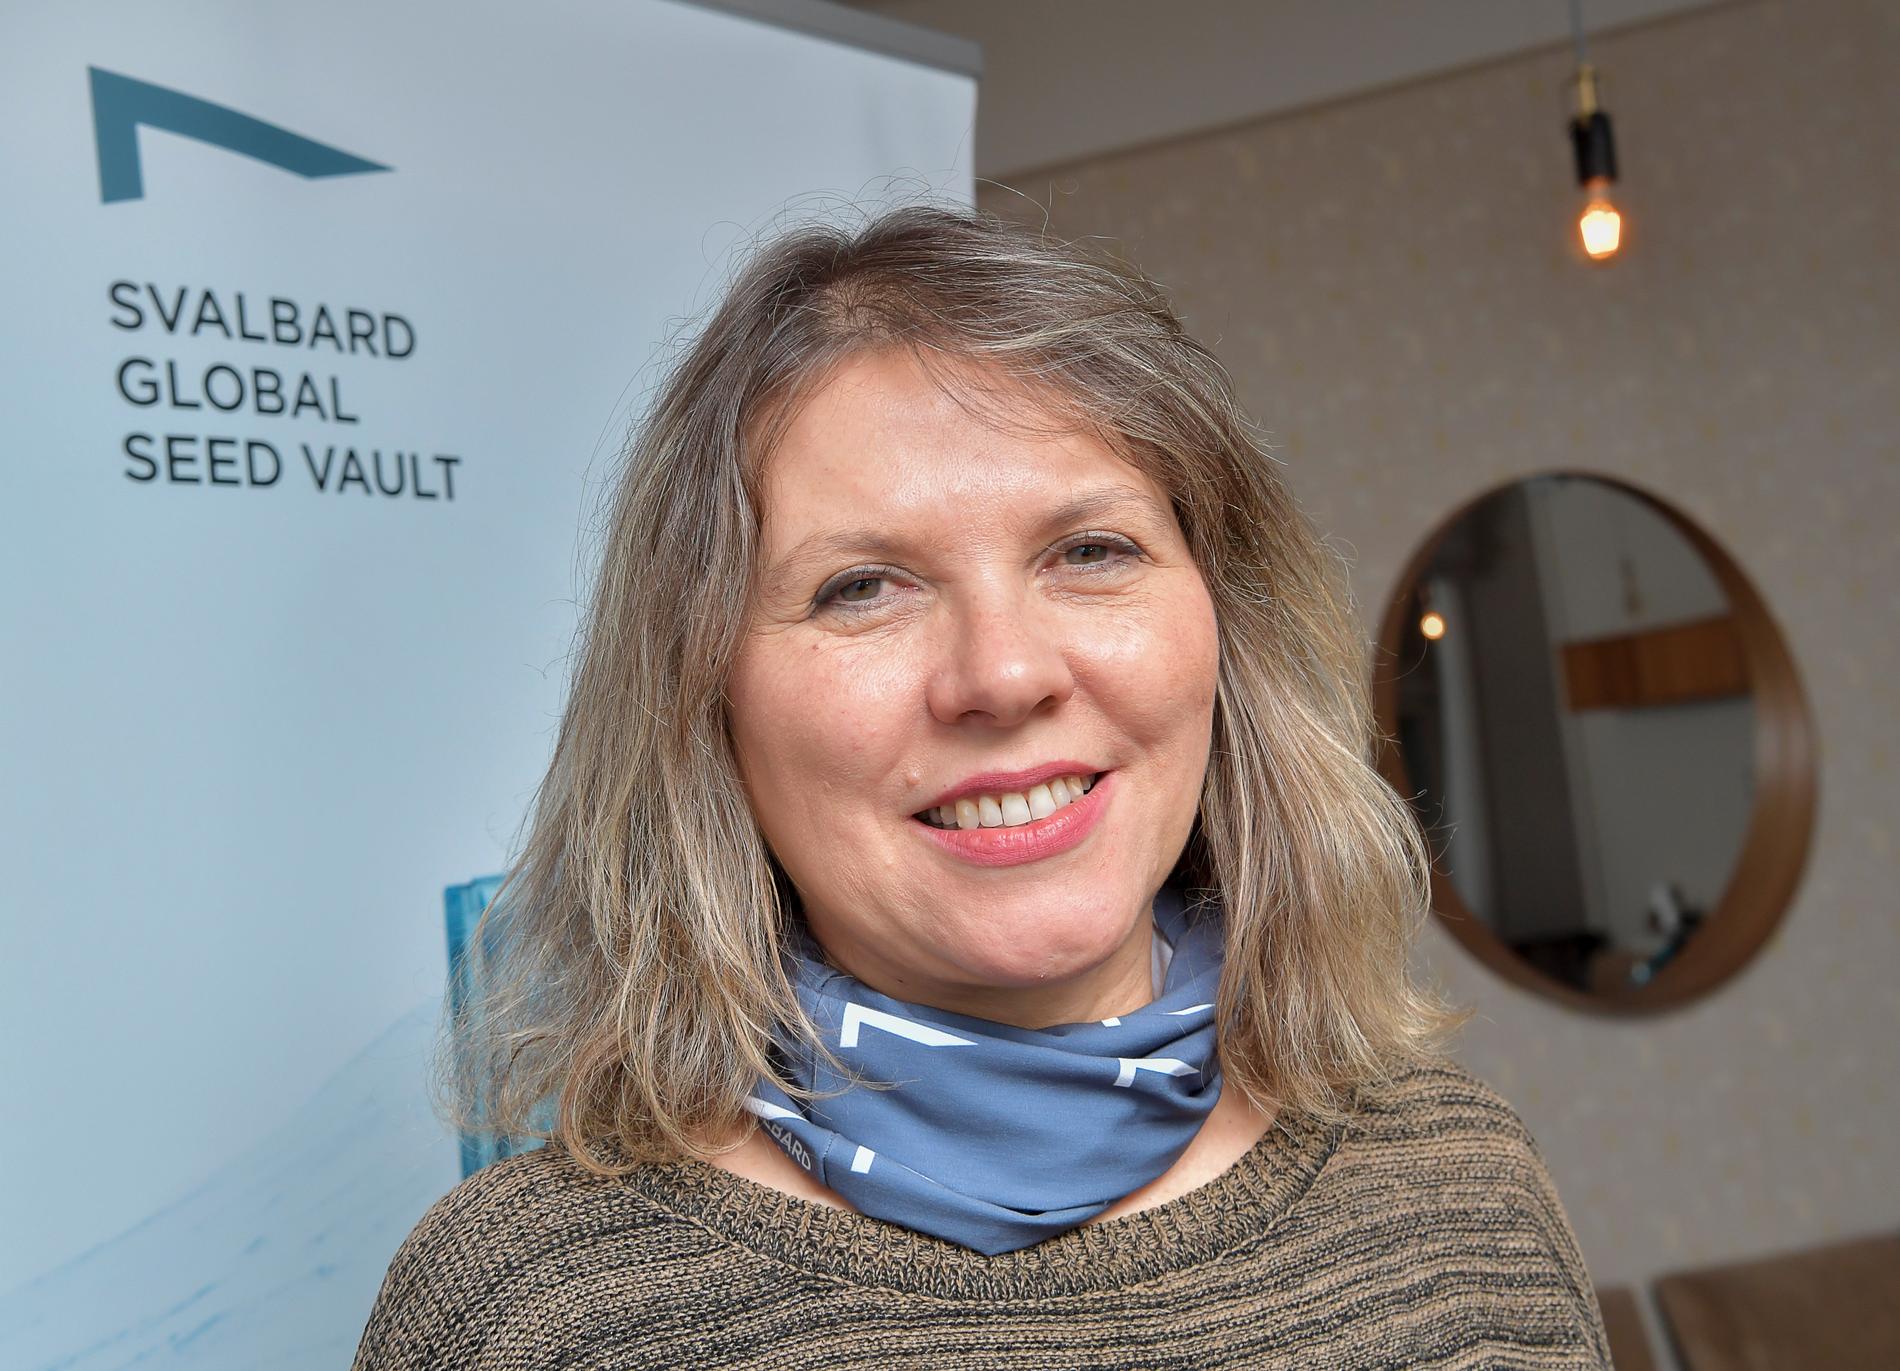 Rosa Lía Barbieri från den brasilianska genbanken Embrapa har kommit till Longyearbyen för att delta i frödeponeringsceremonin vid Svalbards globala frövalv.